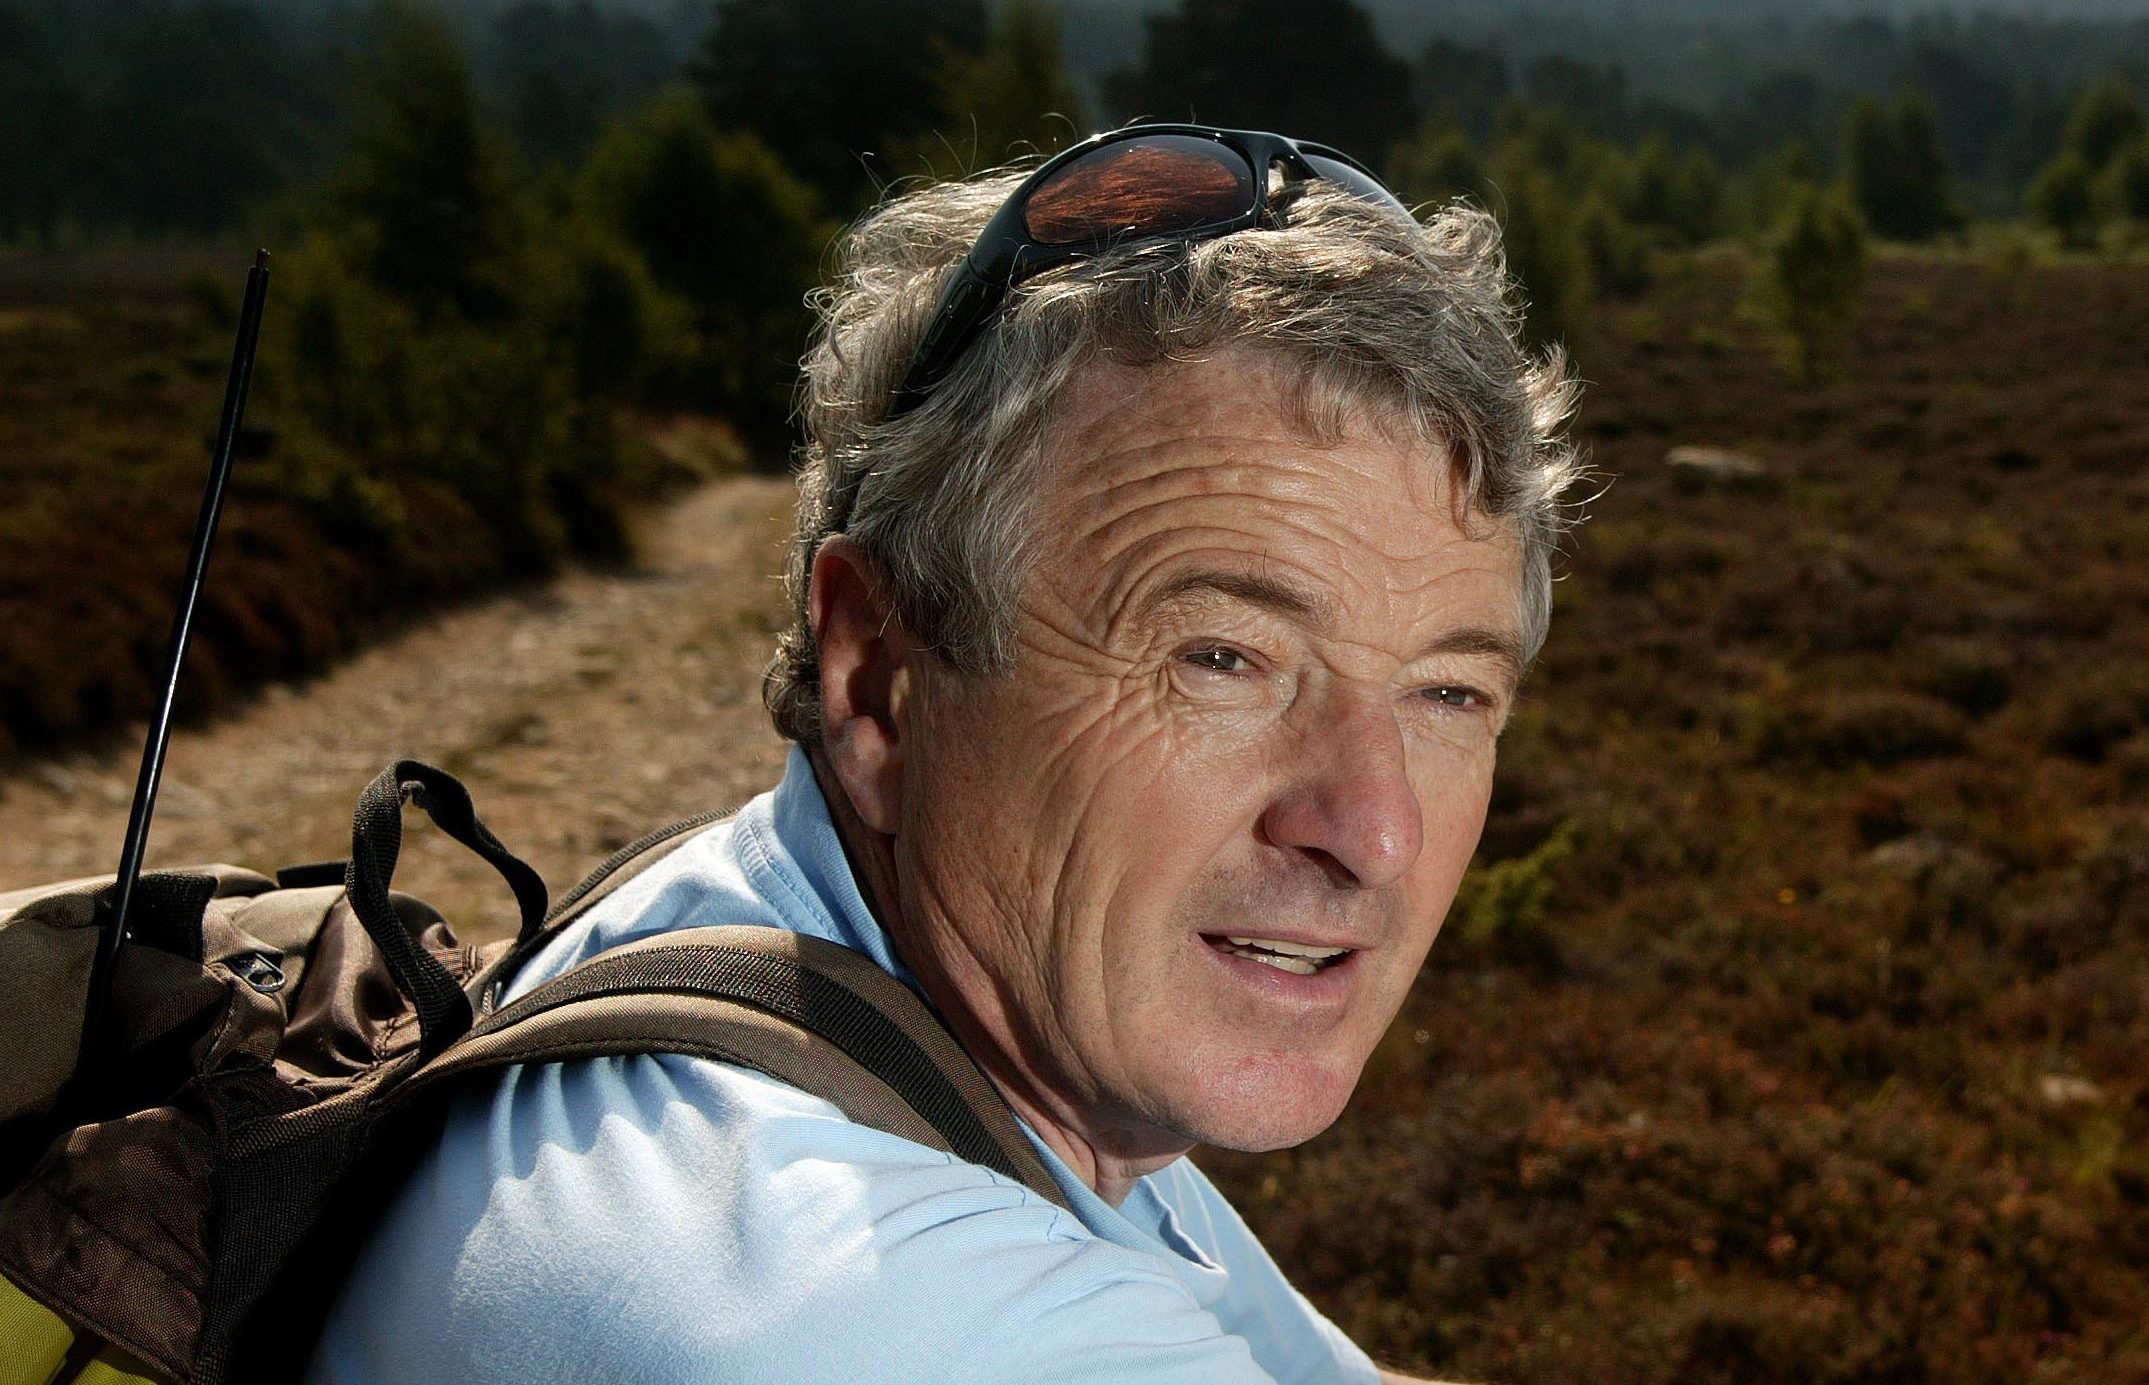 Former leader of the Cairngorm Rescue team, John Allen